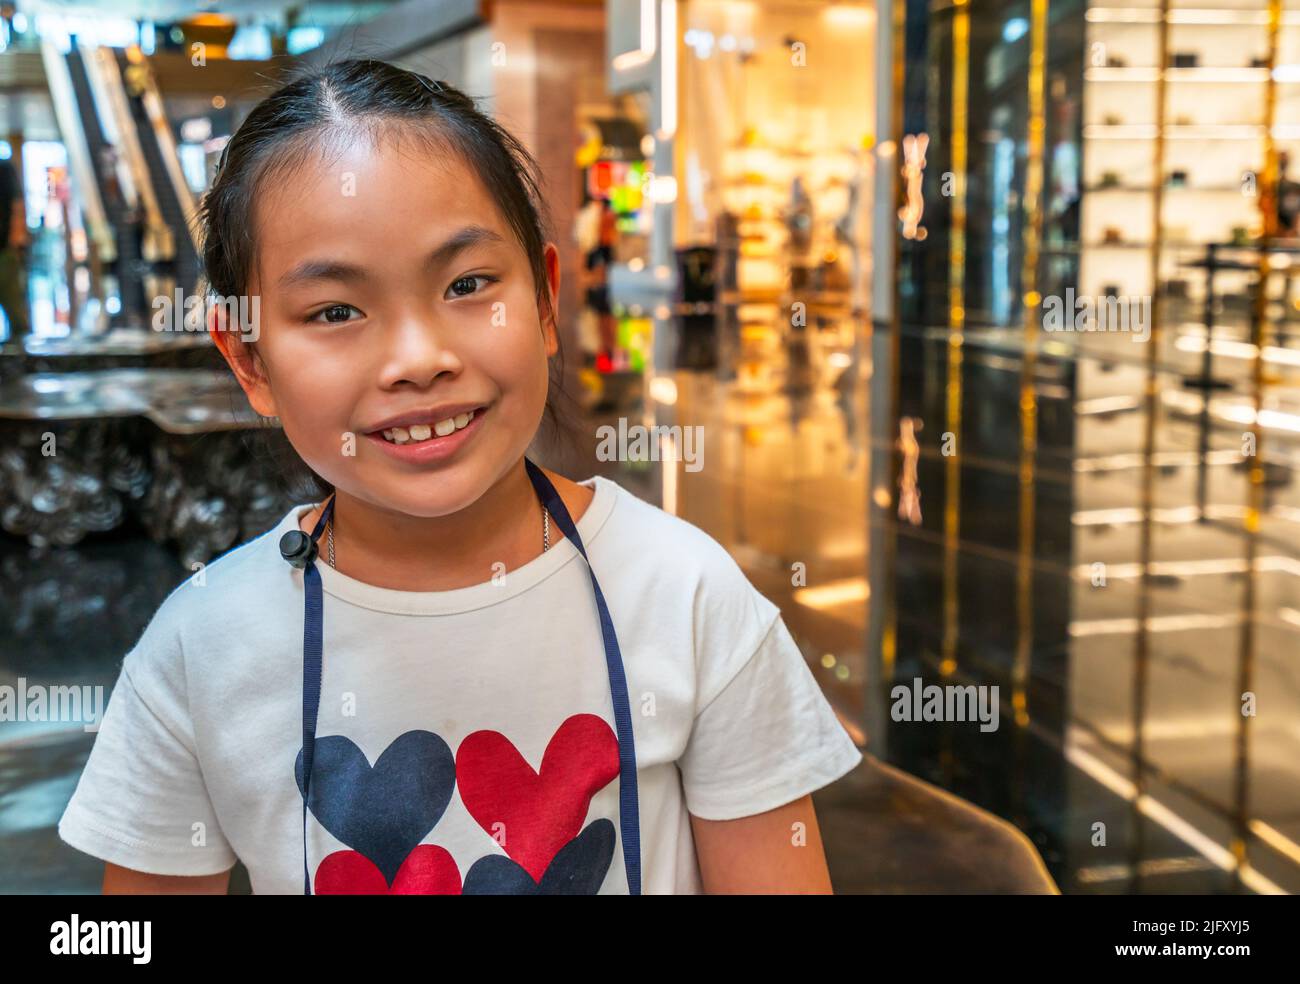 Ritratto di ragazza bambino asiatica carina in un centro commerciale, viso sorridente, ritratto del bambino in primo piano, occhi guardando la macchina fotografica, sfondo sfocato del centro commerciale Foto Stock